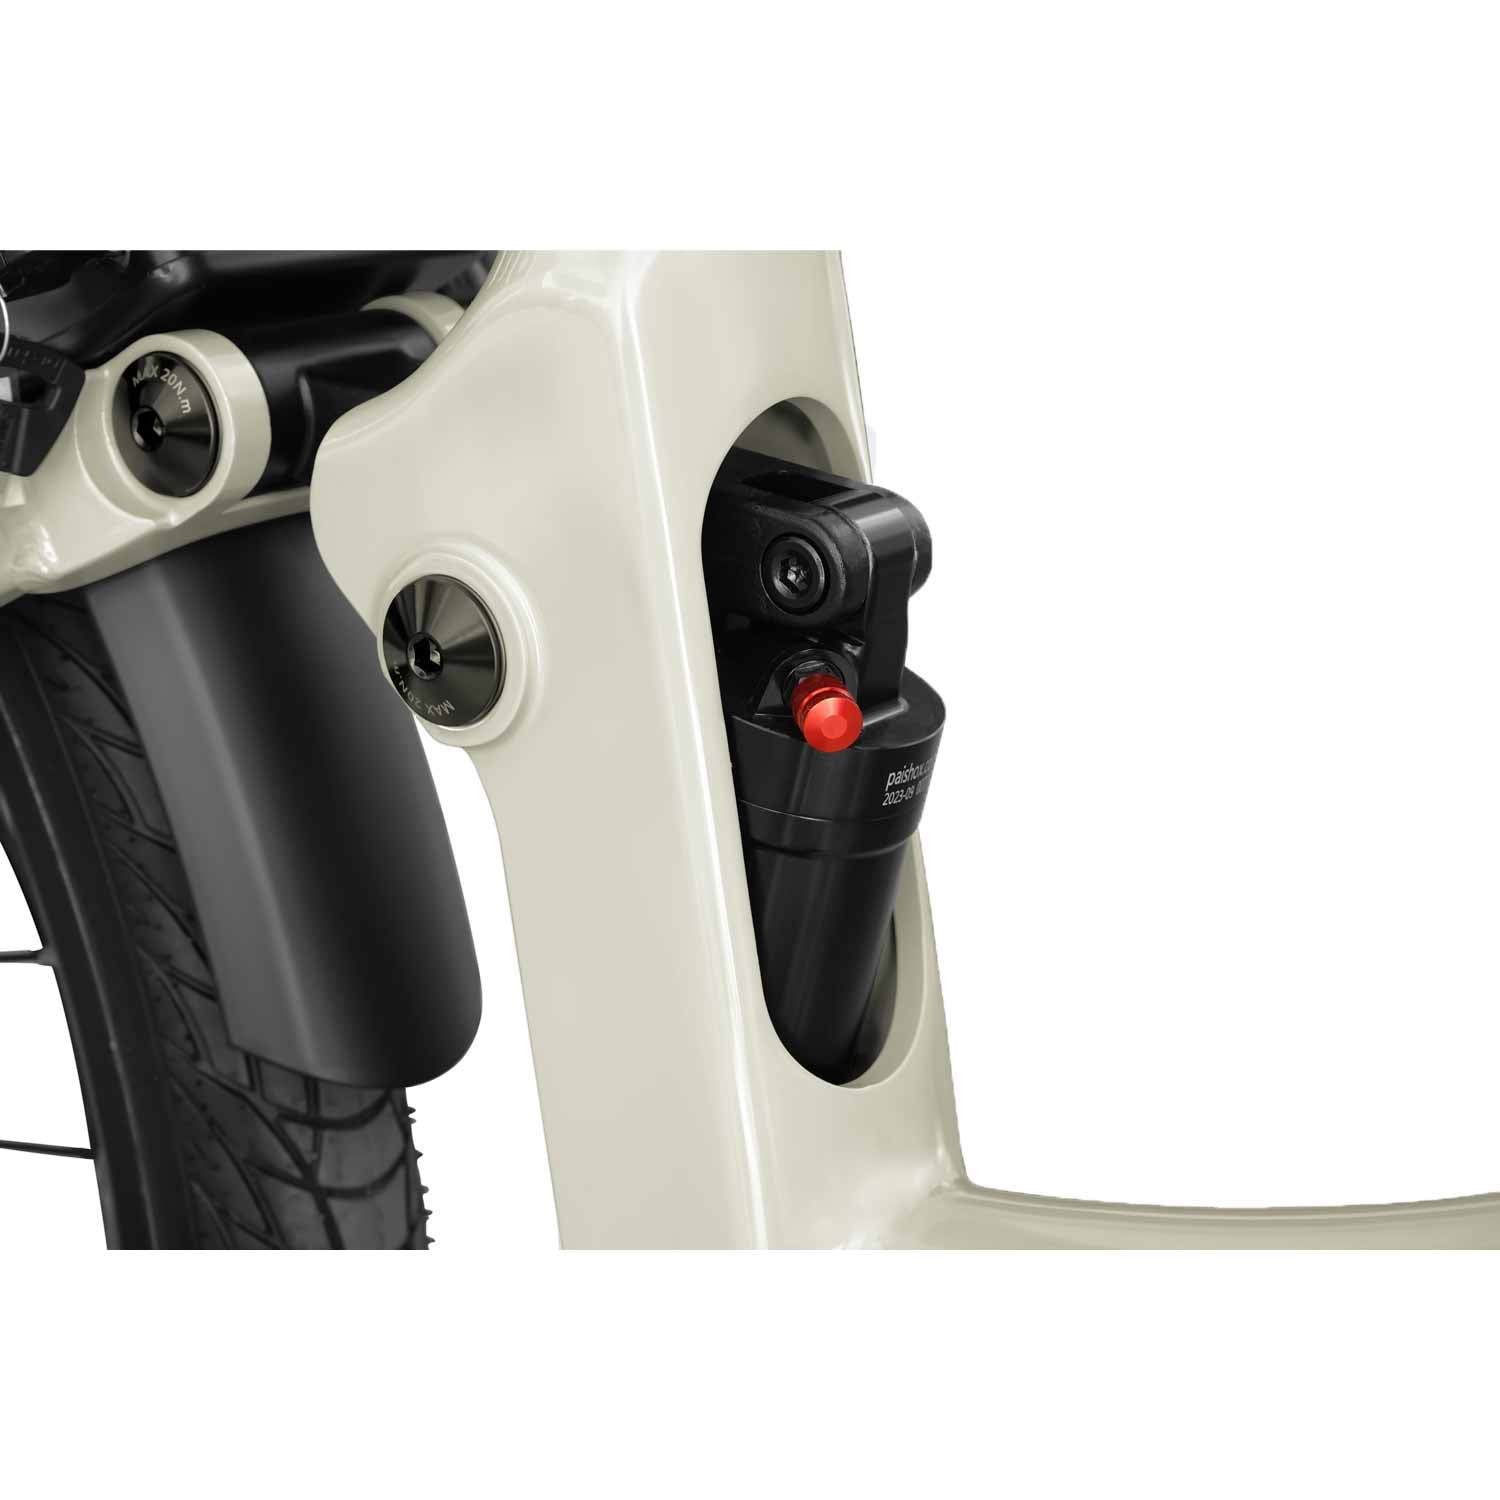 Effizientes Pendeln und Freizeit mit dem A7 Pro E-Bike Spare Zeit beim Pendeln und genieße lange Freizeitfahrten mit dem A7 Pro Elektrobike. Komfort und Leistung vereint. SXT-Scooters